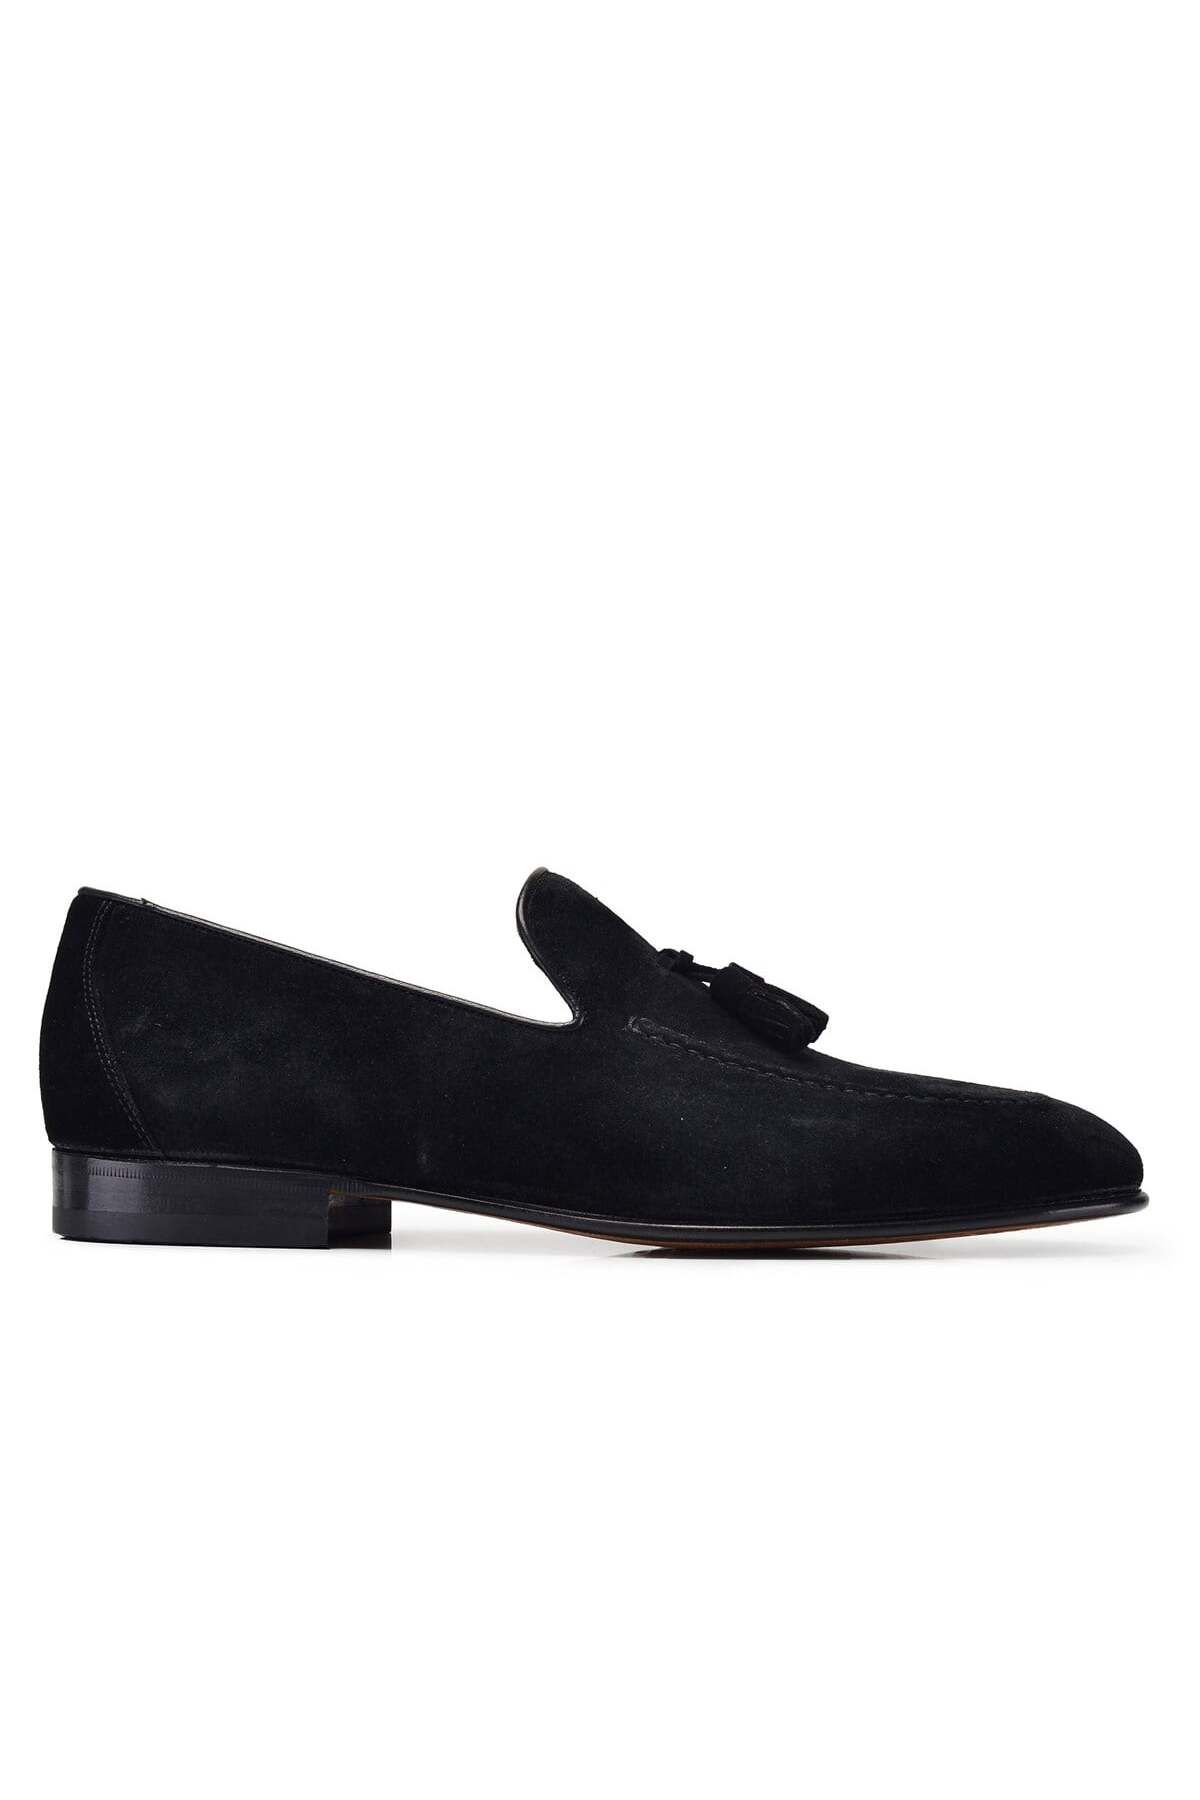 Nevzat Onay Siyah Klasik Loafer Kösele Erkek Ayakkabı -9859-